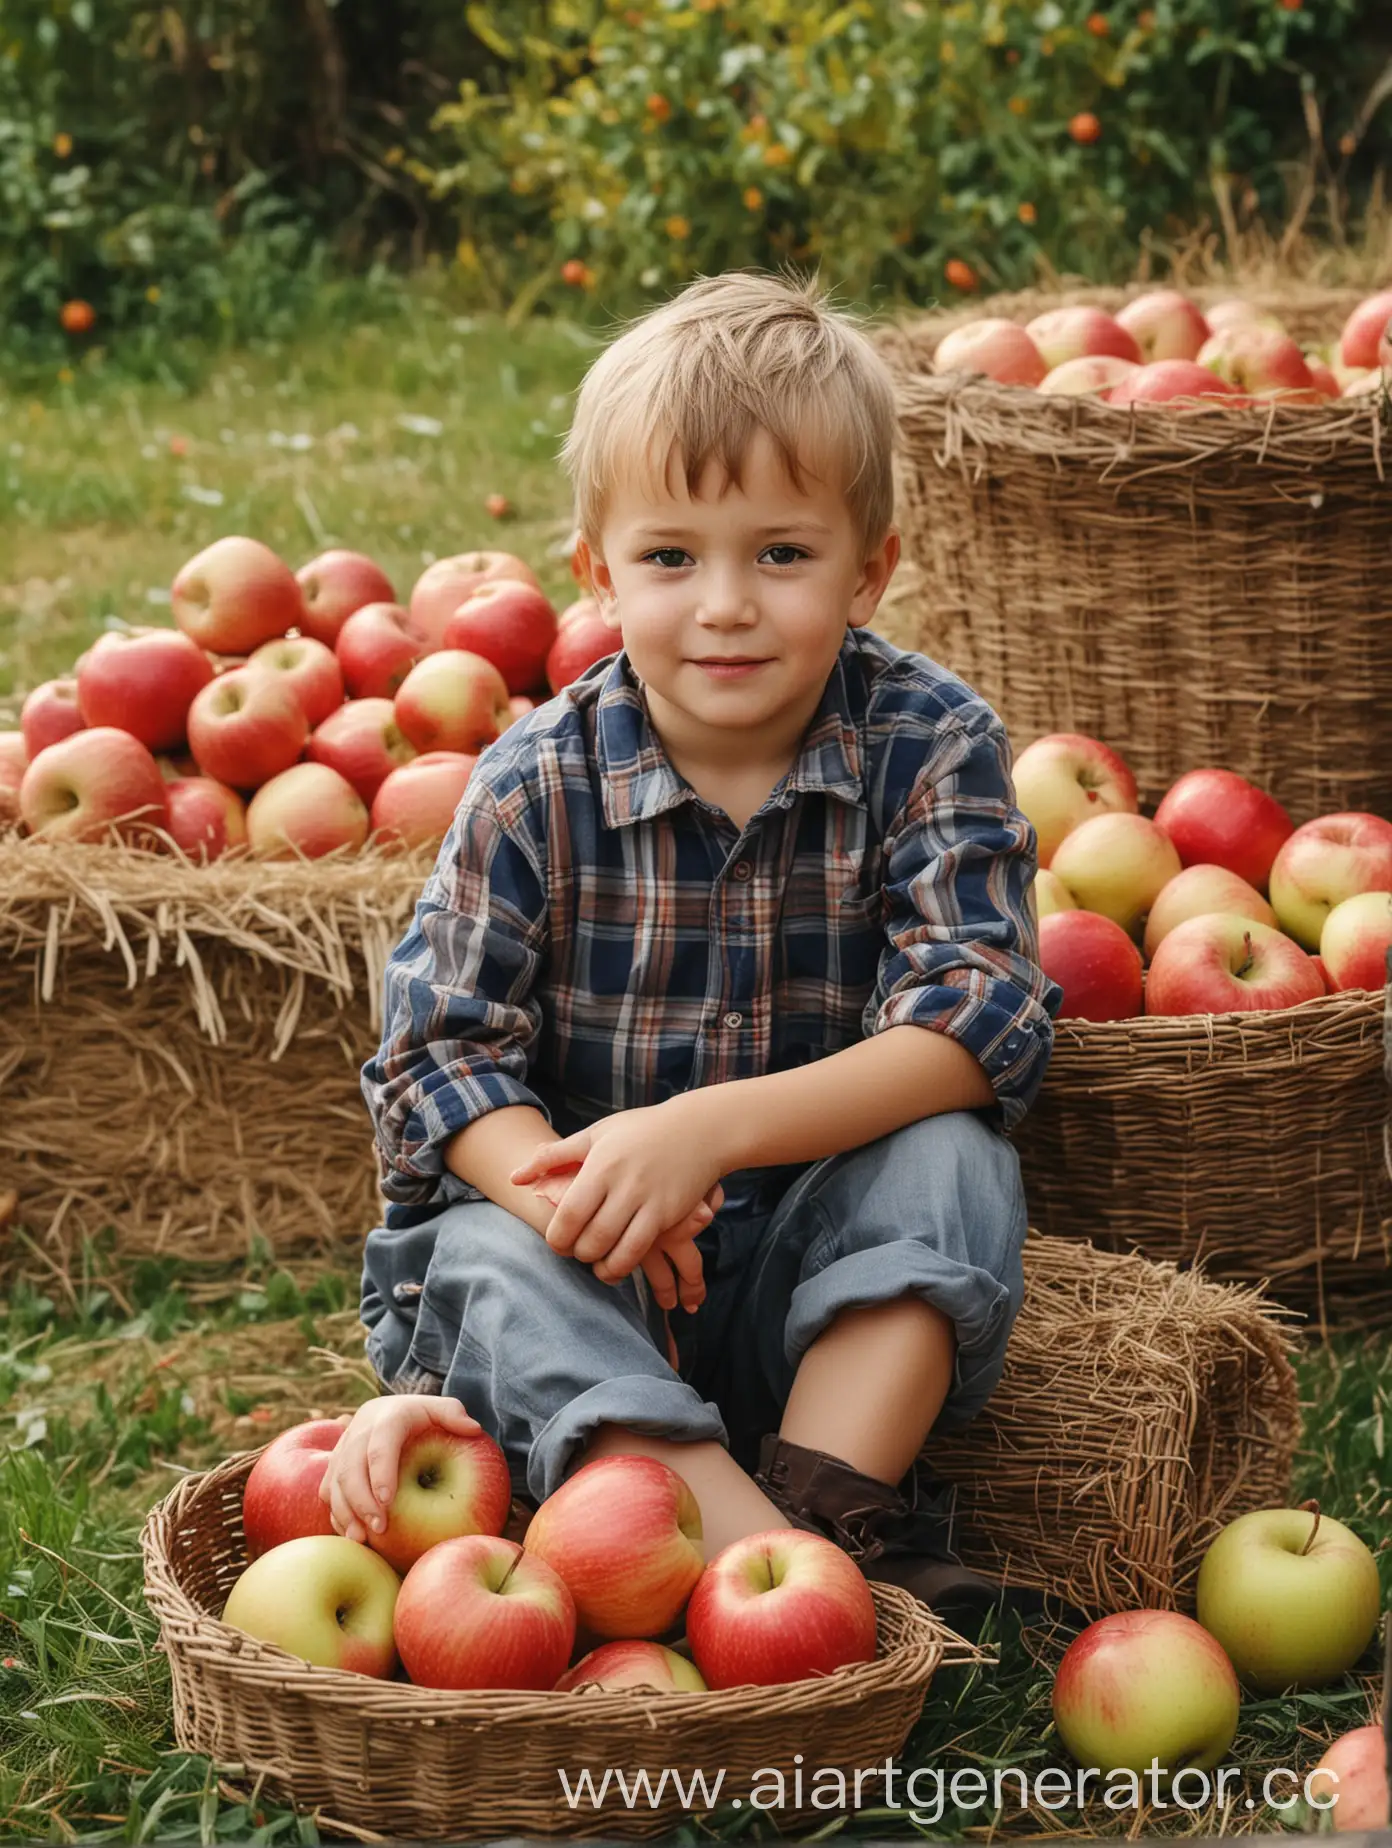 маленький мальчик сидит на траве, навалившись на стог сена, рядом стоят корзины с яблоками, фон сильно размыт